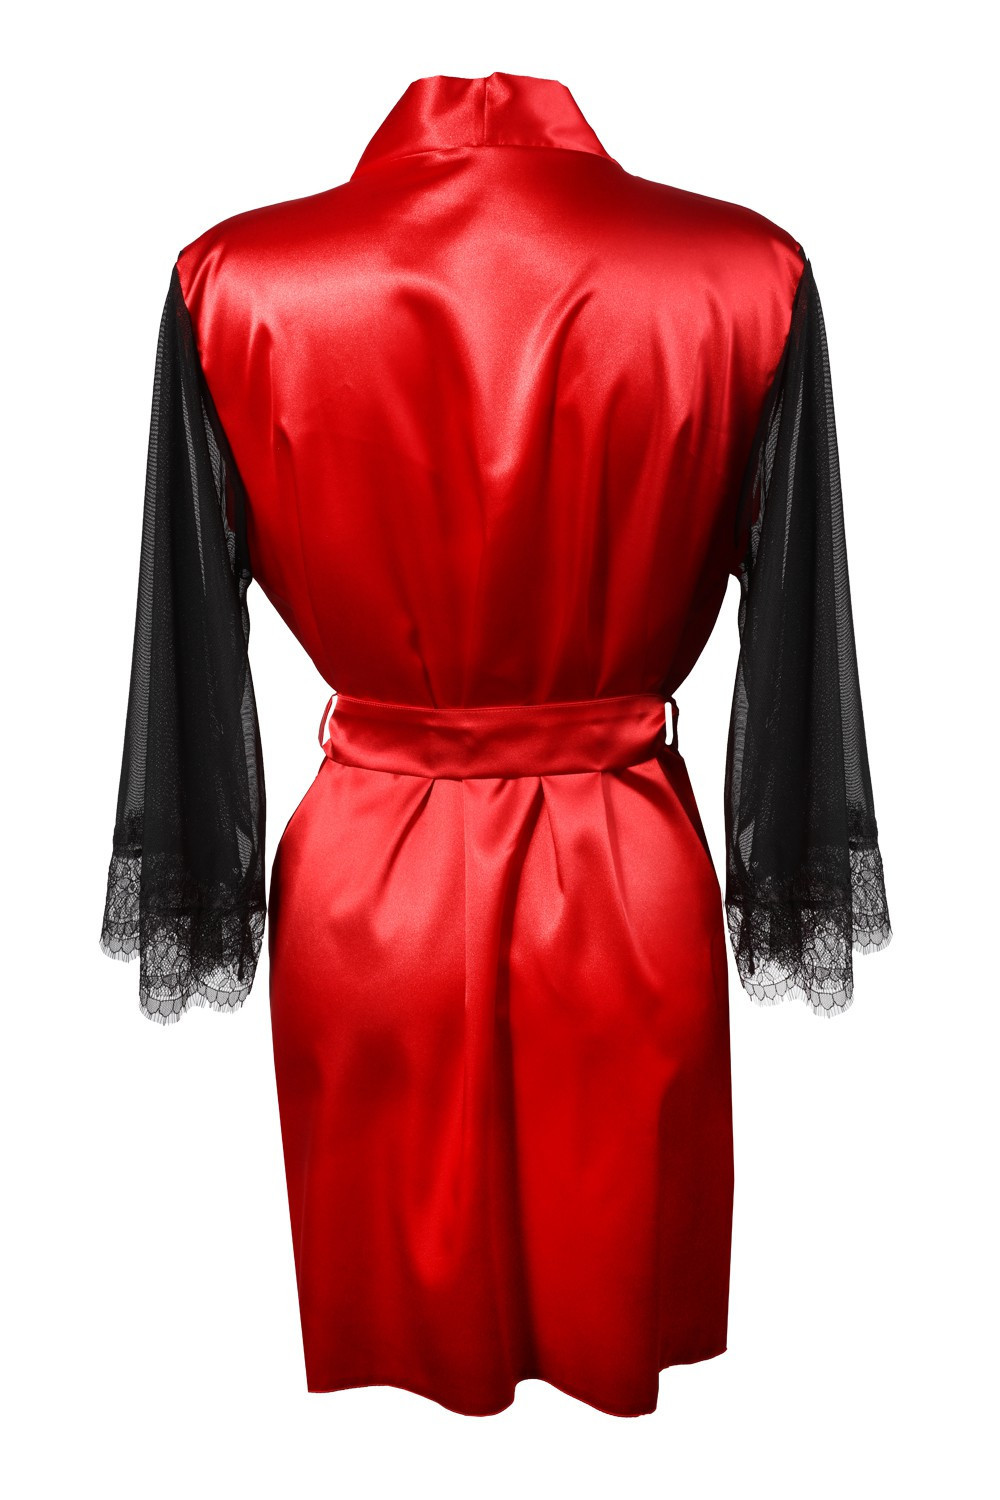 DKaren Housecoat Bonnie Red 2XL červená